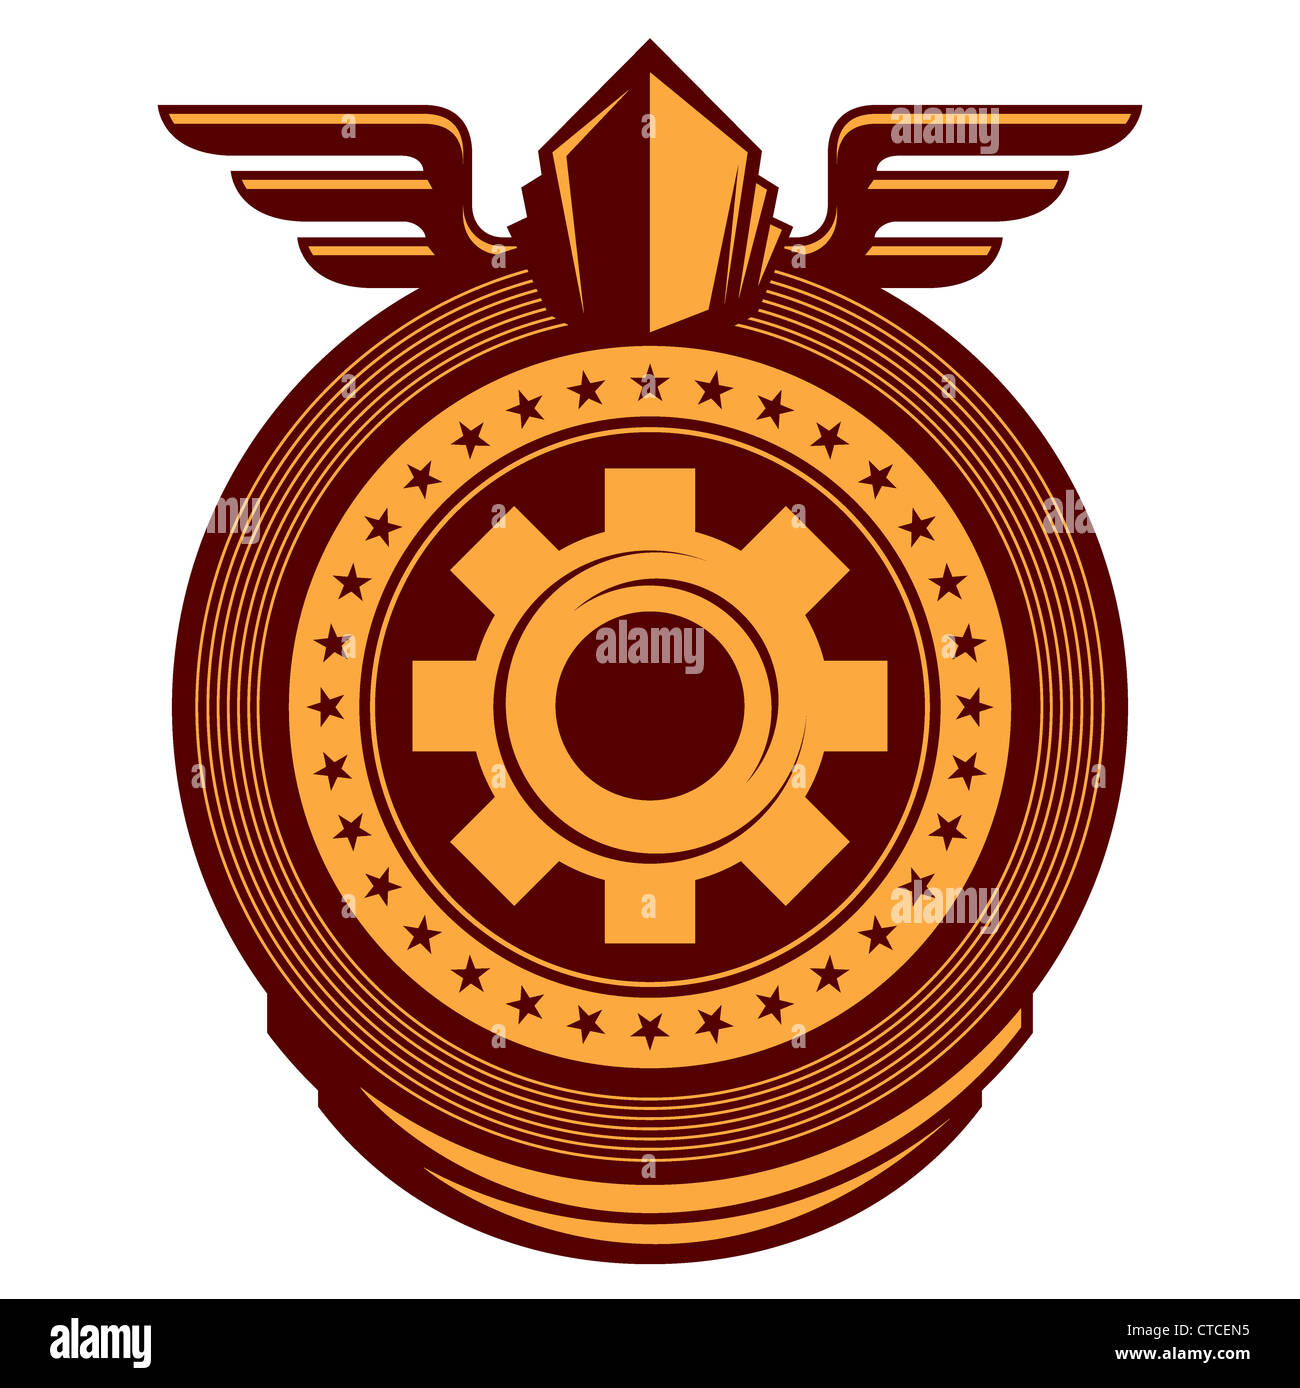 L'emblème de travail illustré avec roue dentée Banque D'Images